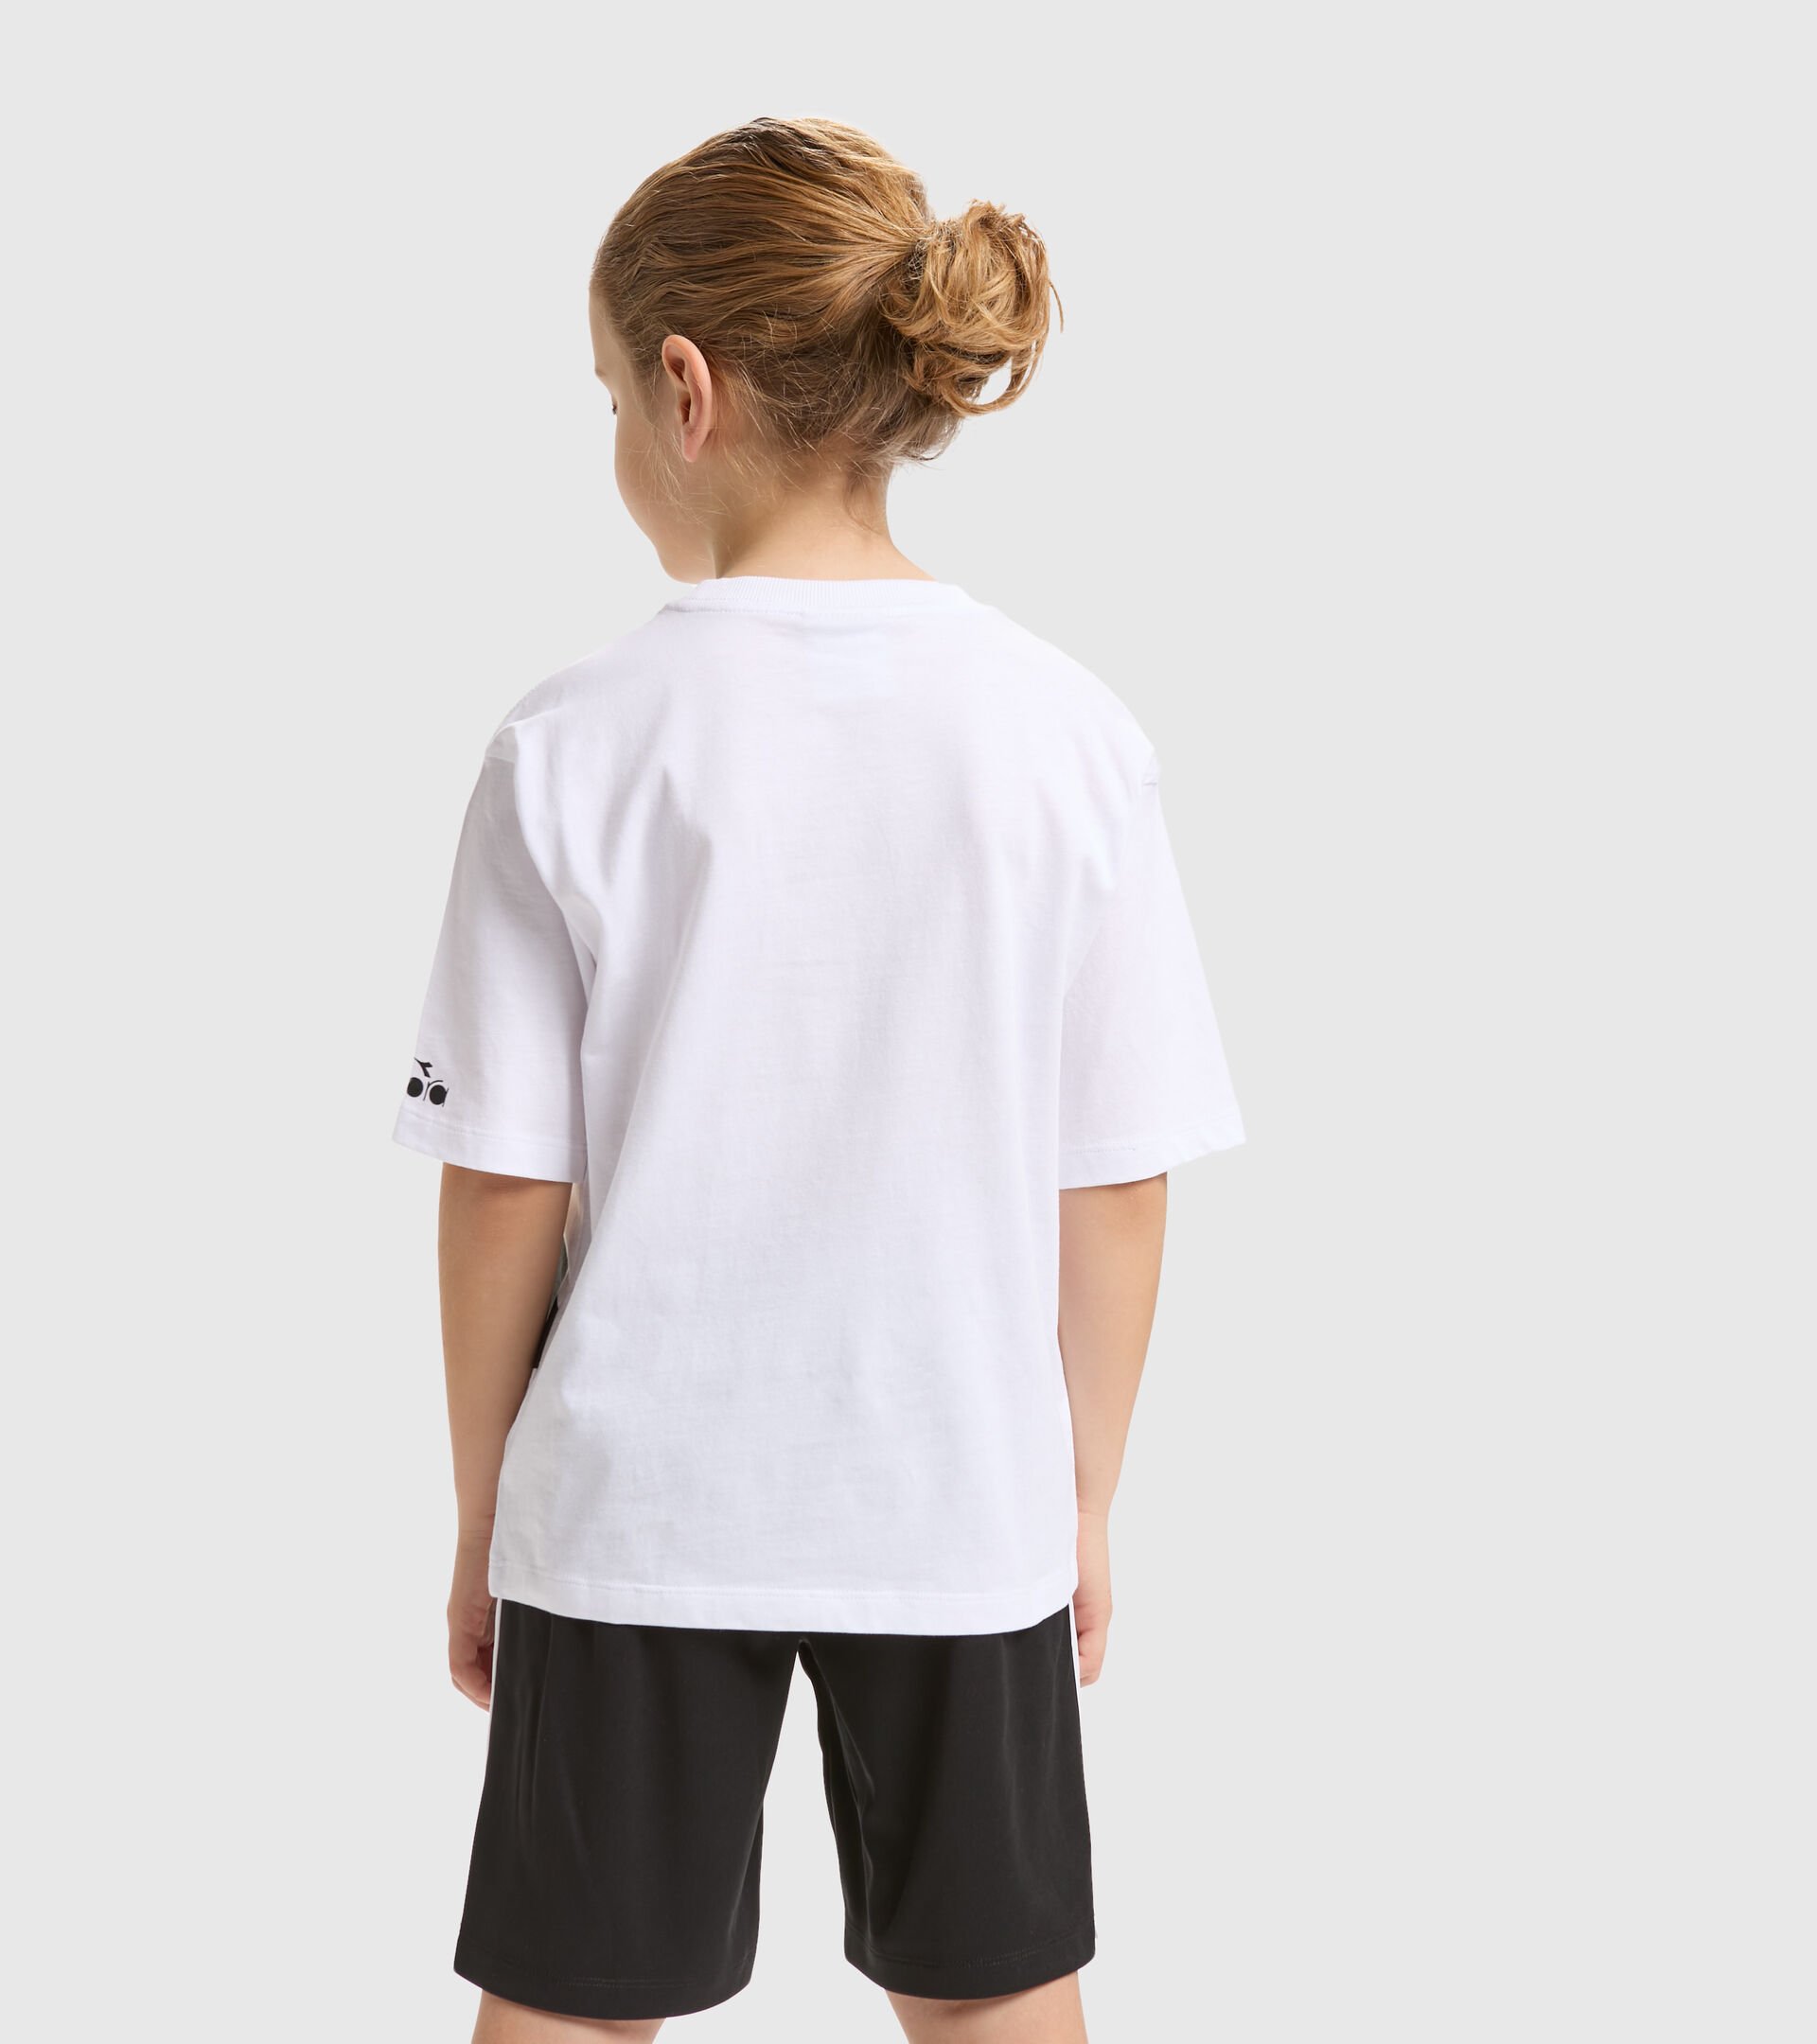 JB.T-SHIRT SS POWER LOGO Cotton sports T-shirt - Boy's - Diadora Online Store